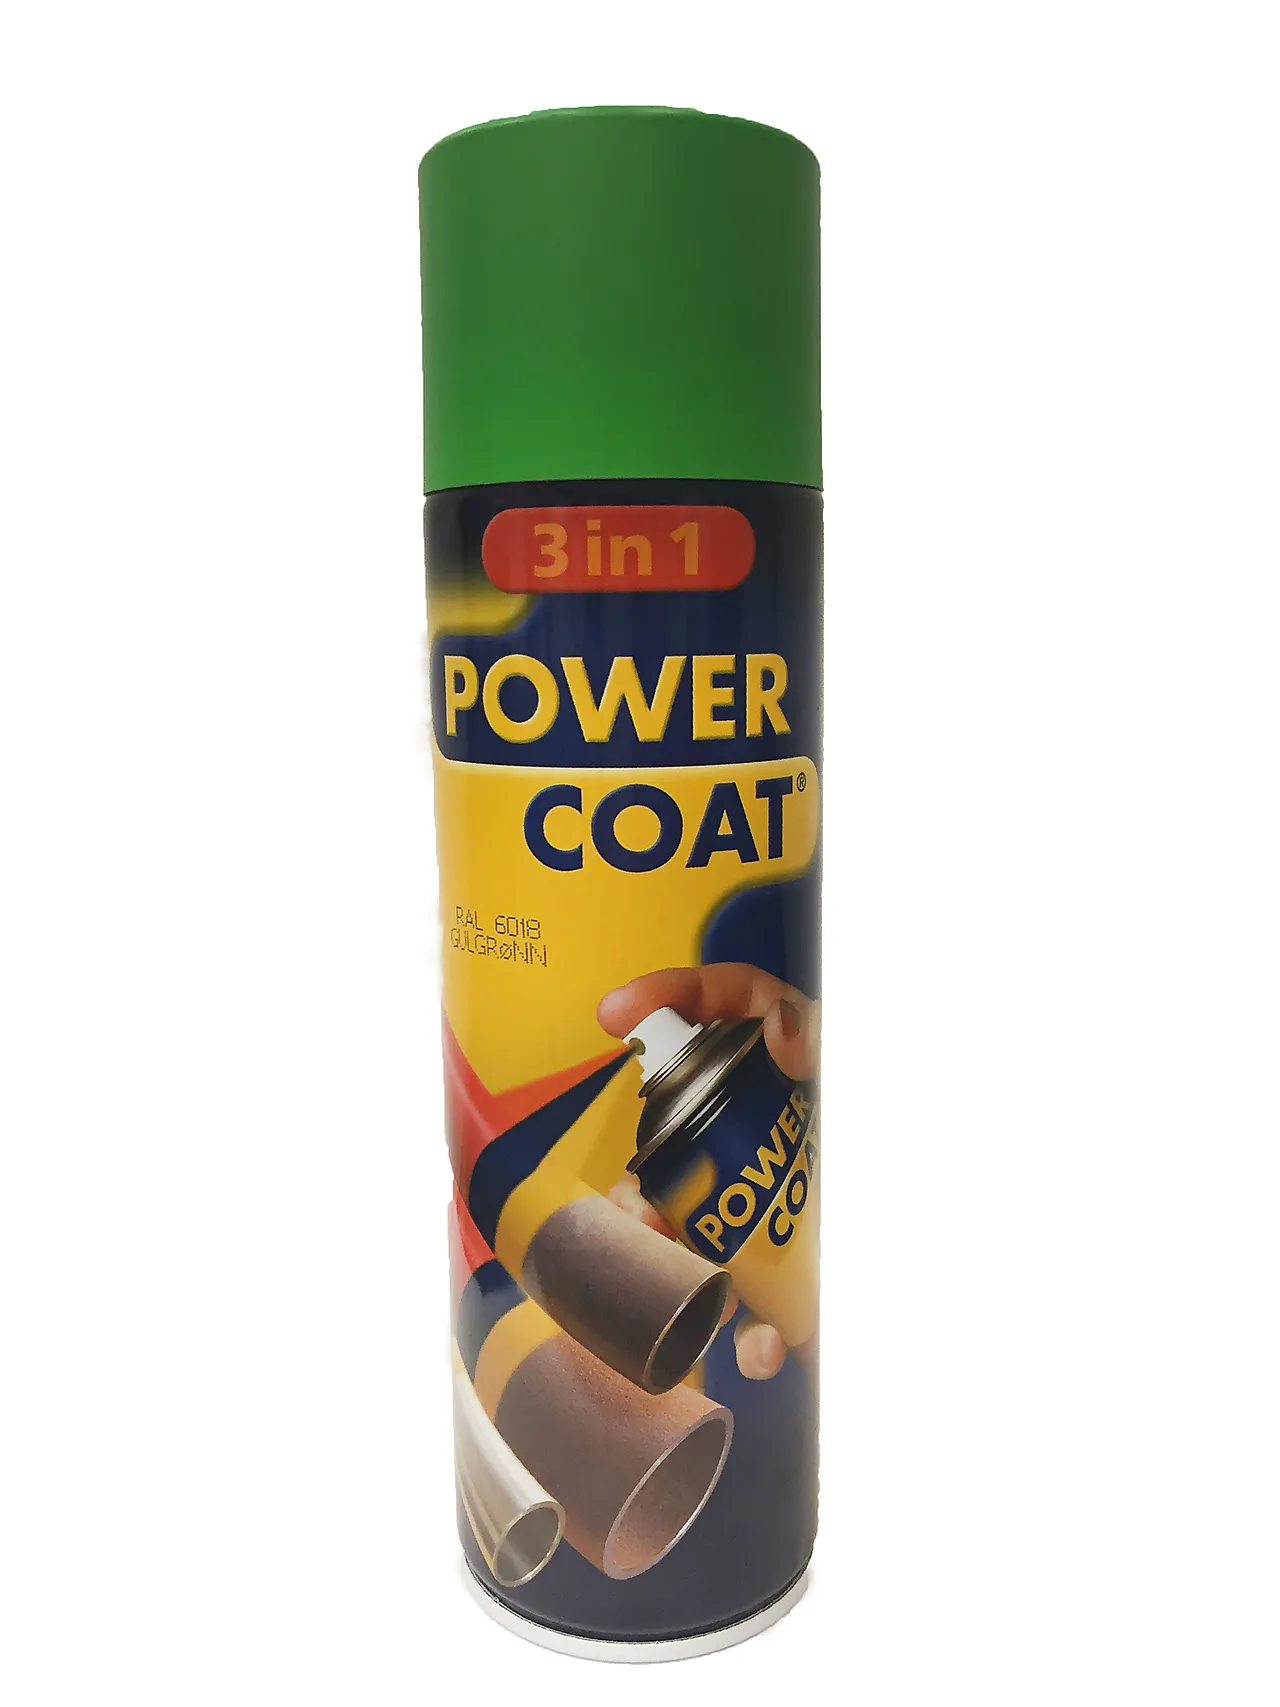 Spraymaling powcoat 3in1 6018 gulgrønn